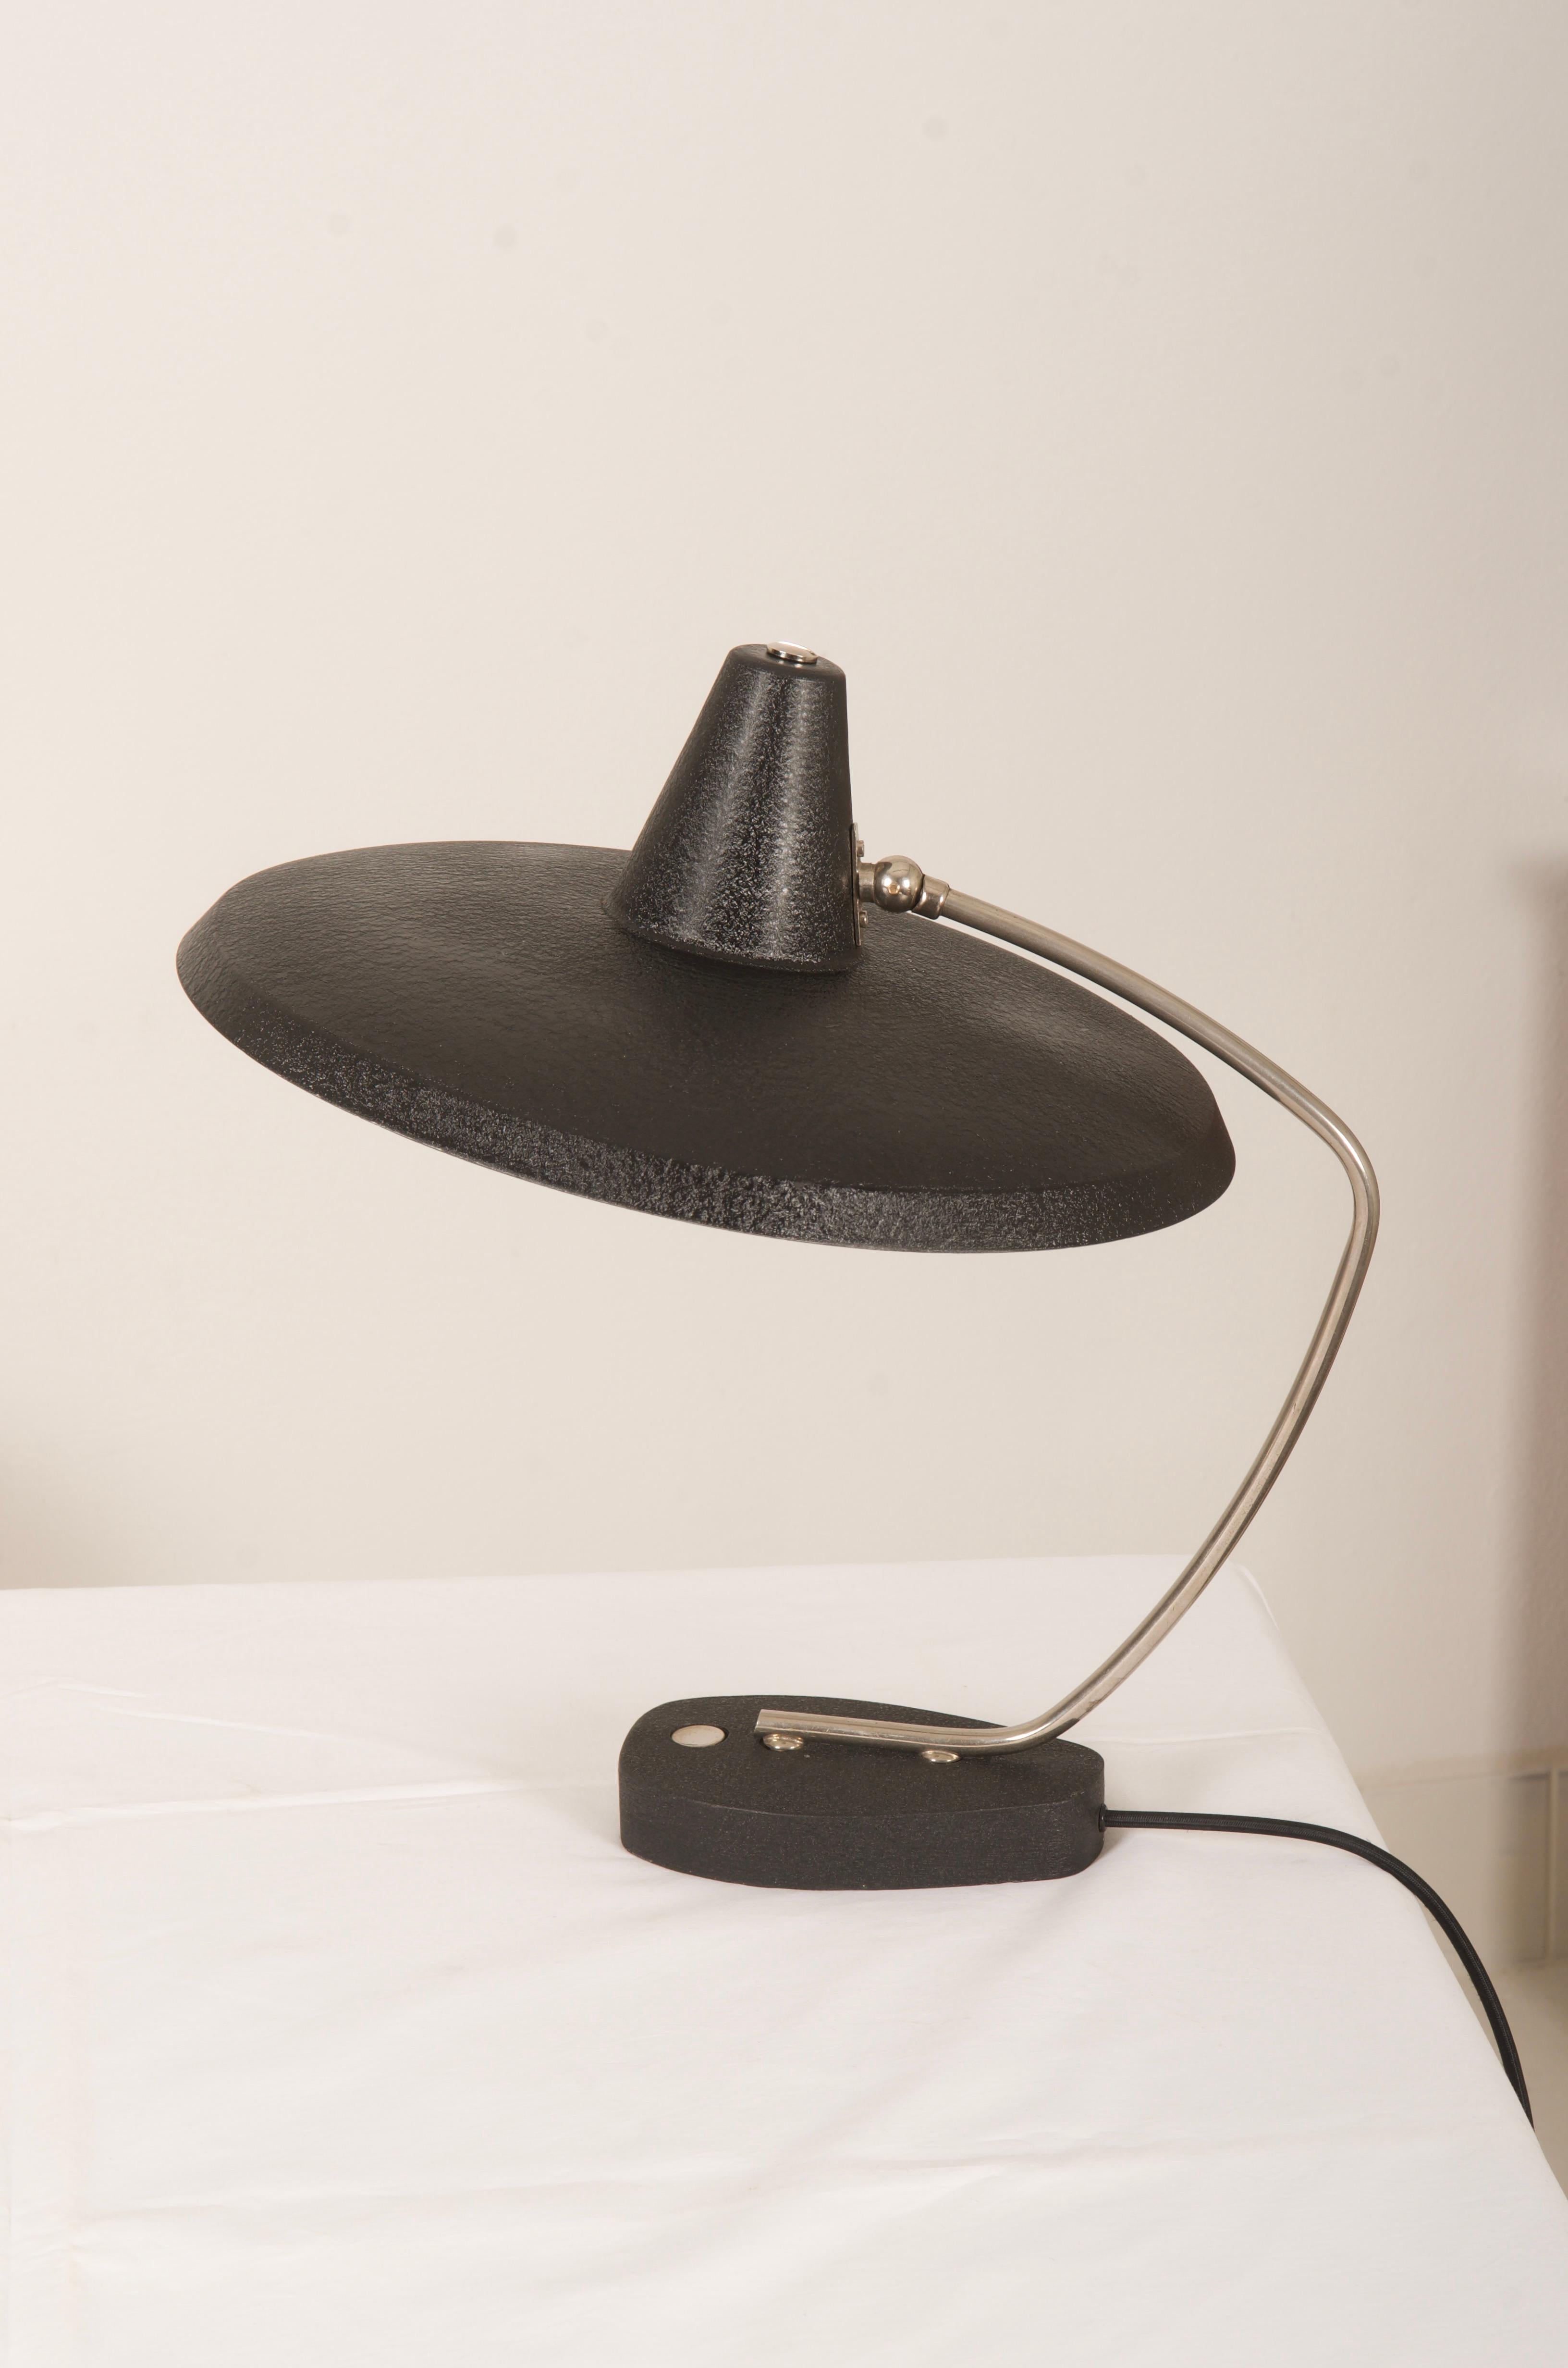 Messing / Stahl-Konstruktion mit einem Hexenhut förmigen Lampenschirm schwarz lackiert mit einer E27-Fassung ausgestattet, Modell. Zuschreibung an Christian Dell.
Schöner Originalzustand.
   